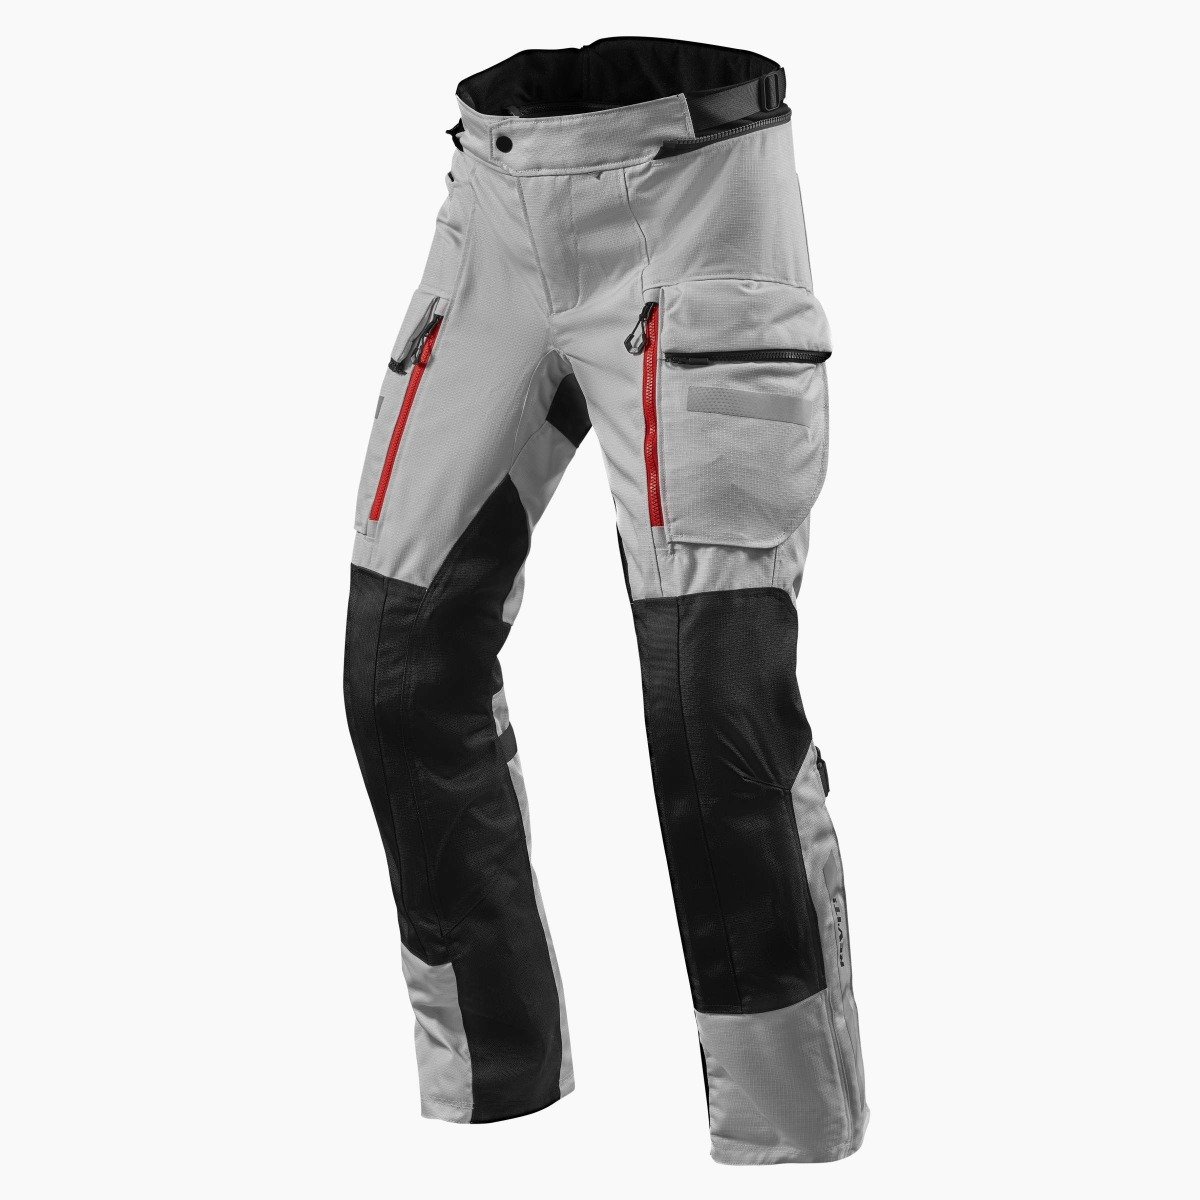 Image of REV'IT! Sand 4 H2O Long Argent Noir Pantalon Taille 2XL